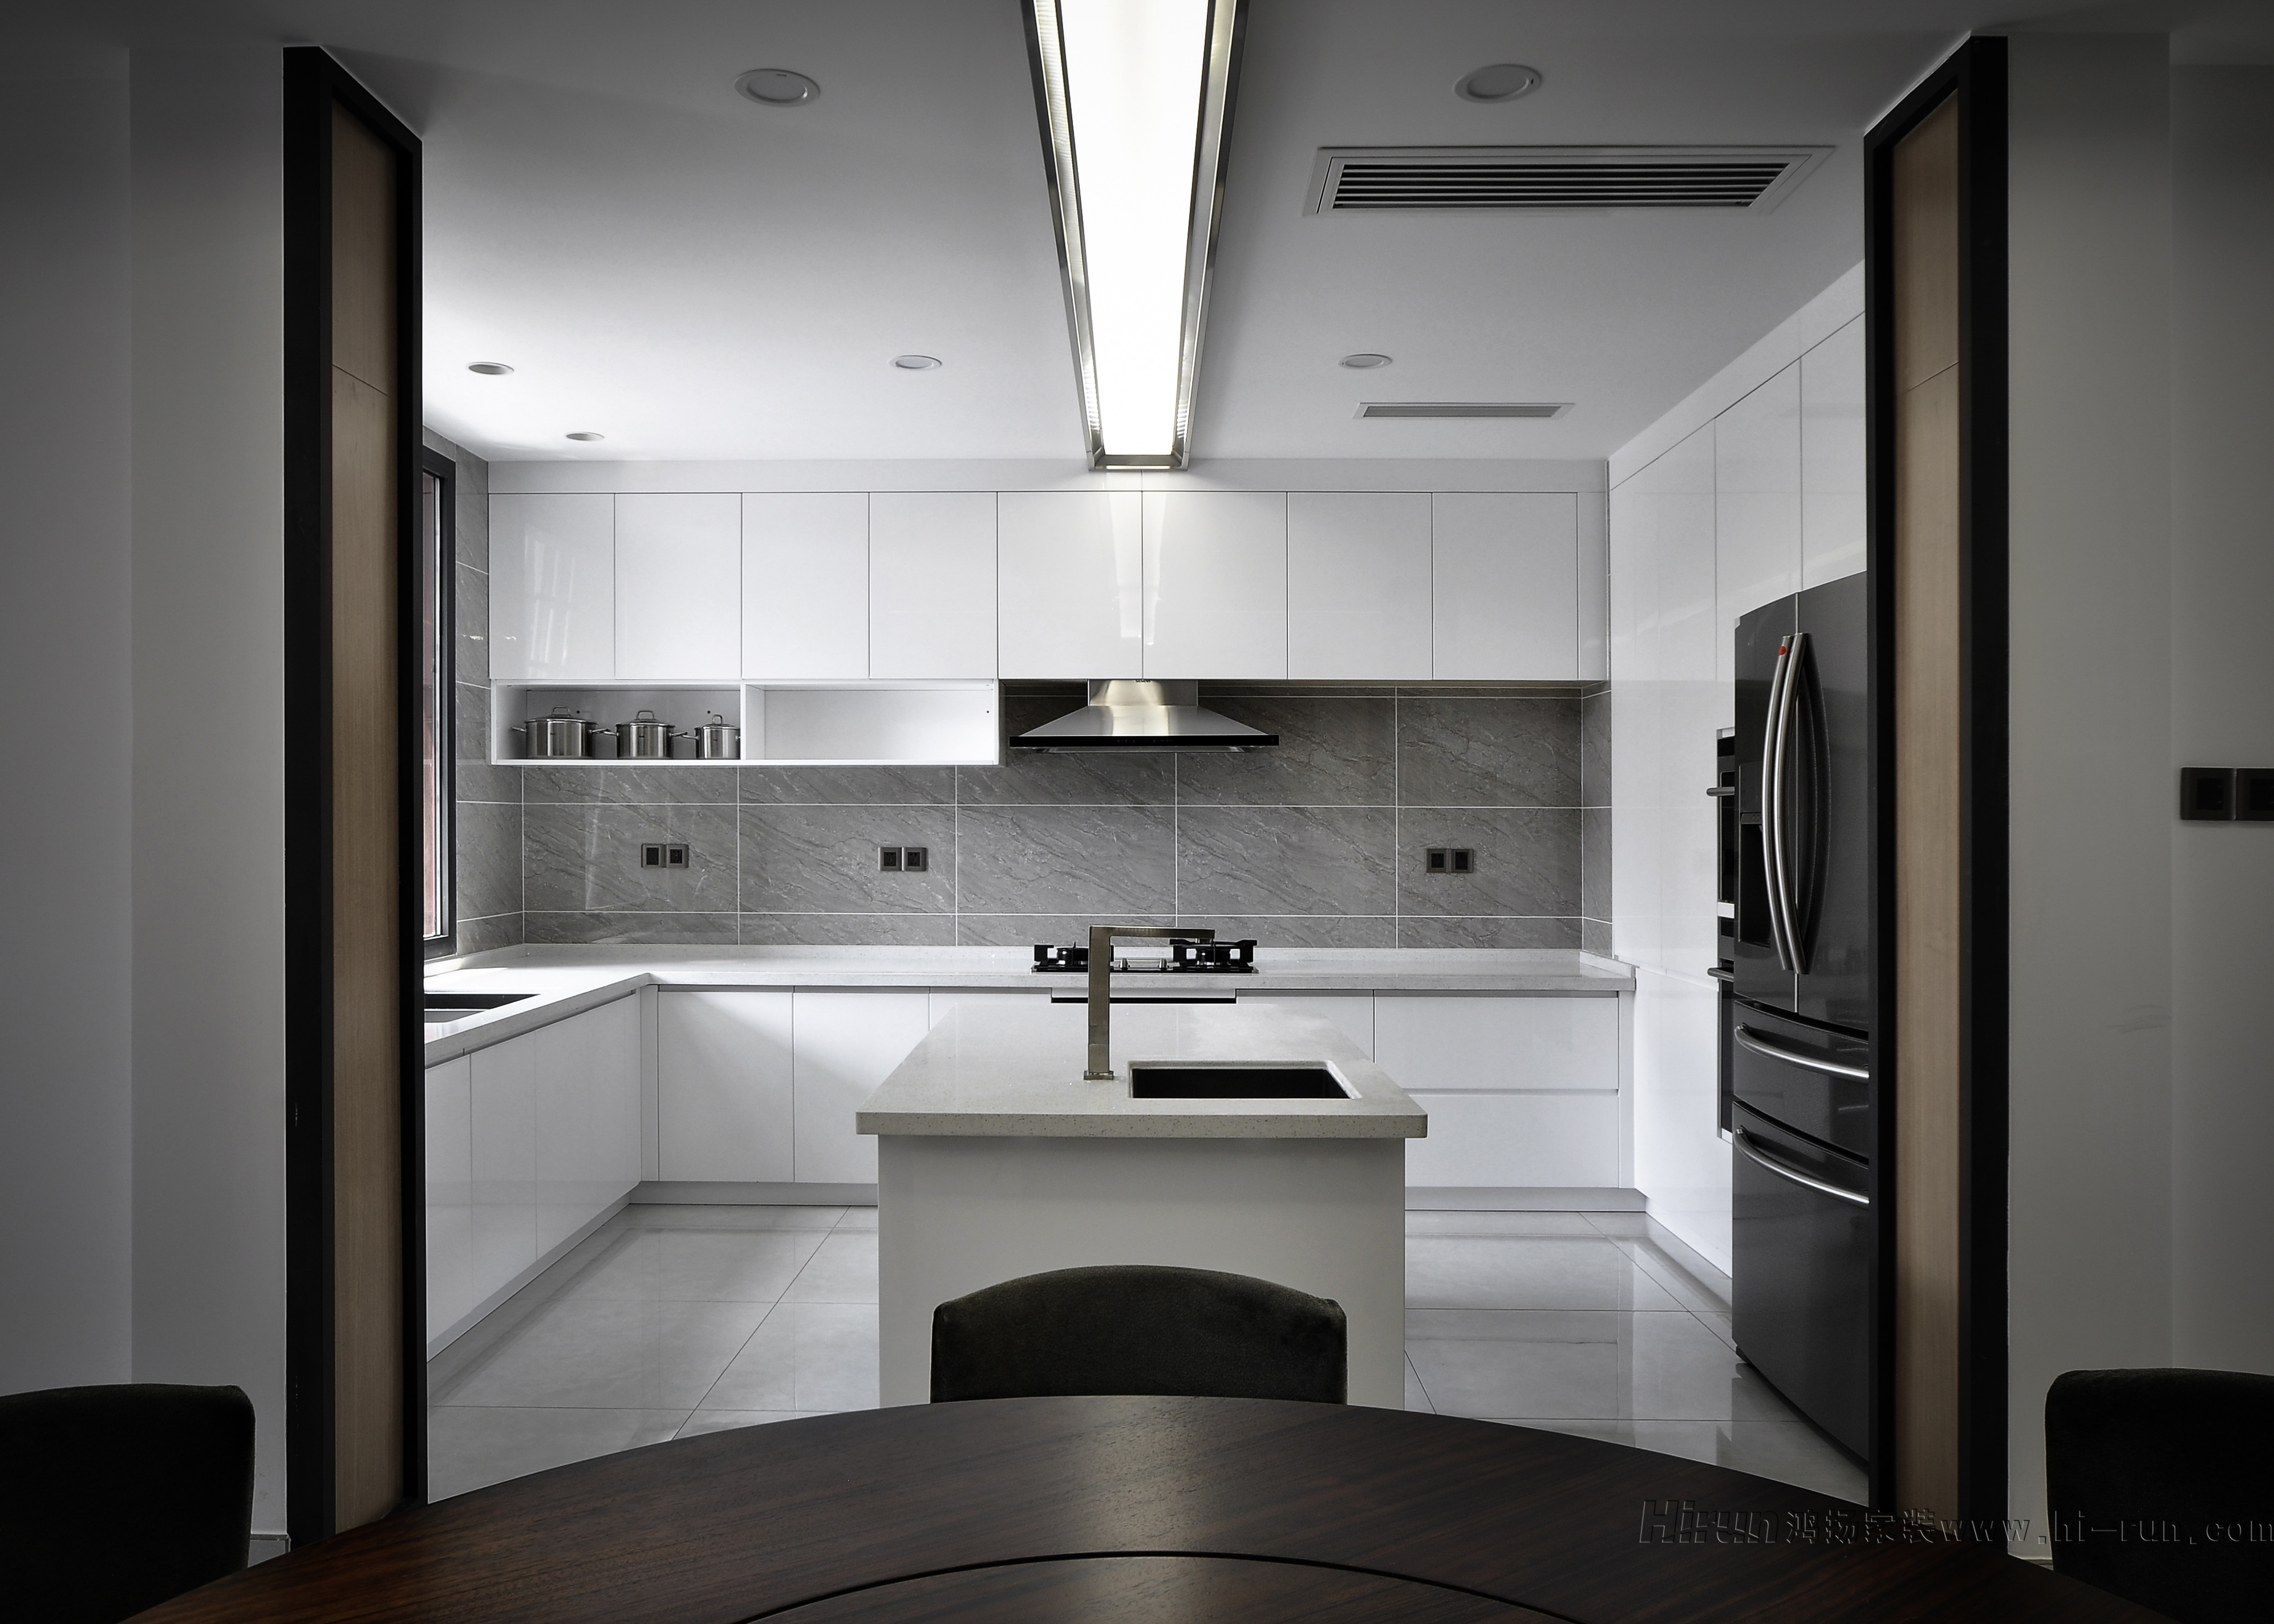 新中式厨房 - 效果图交流区-建E室内设计网